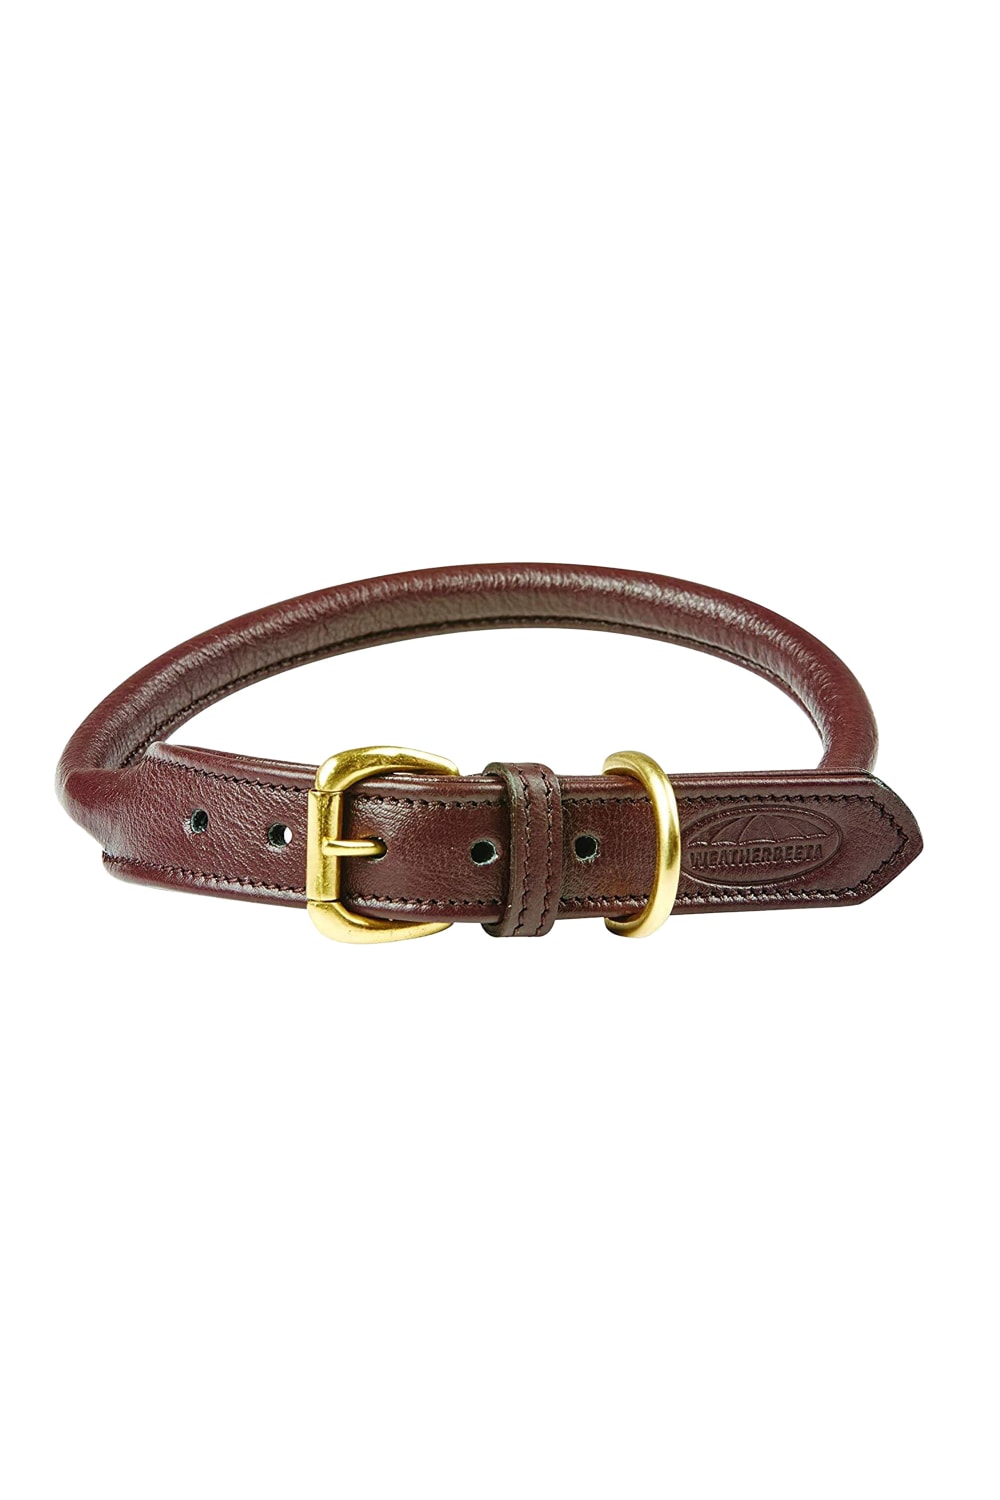 Weatherbeeta Rolled Leather Dog Collar (Brown) (M)